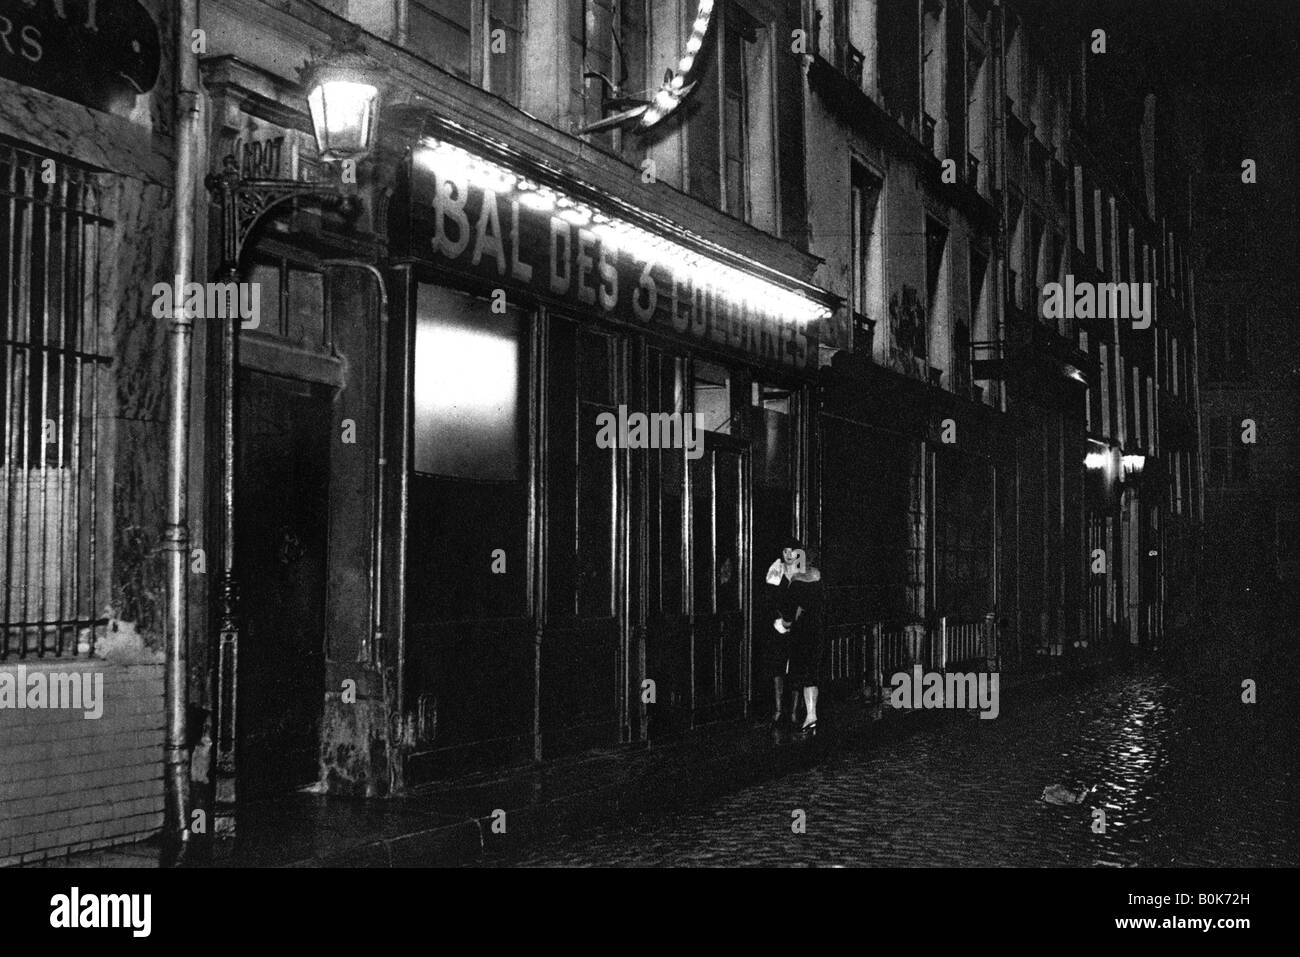 Entrance of a bal-musette, Rue de Lappe, Paris, 1931. Artist: Ernest Flammarion Stock Photo